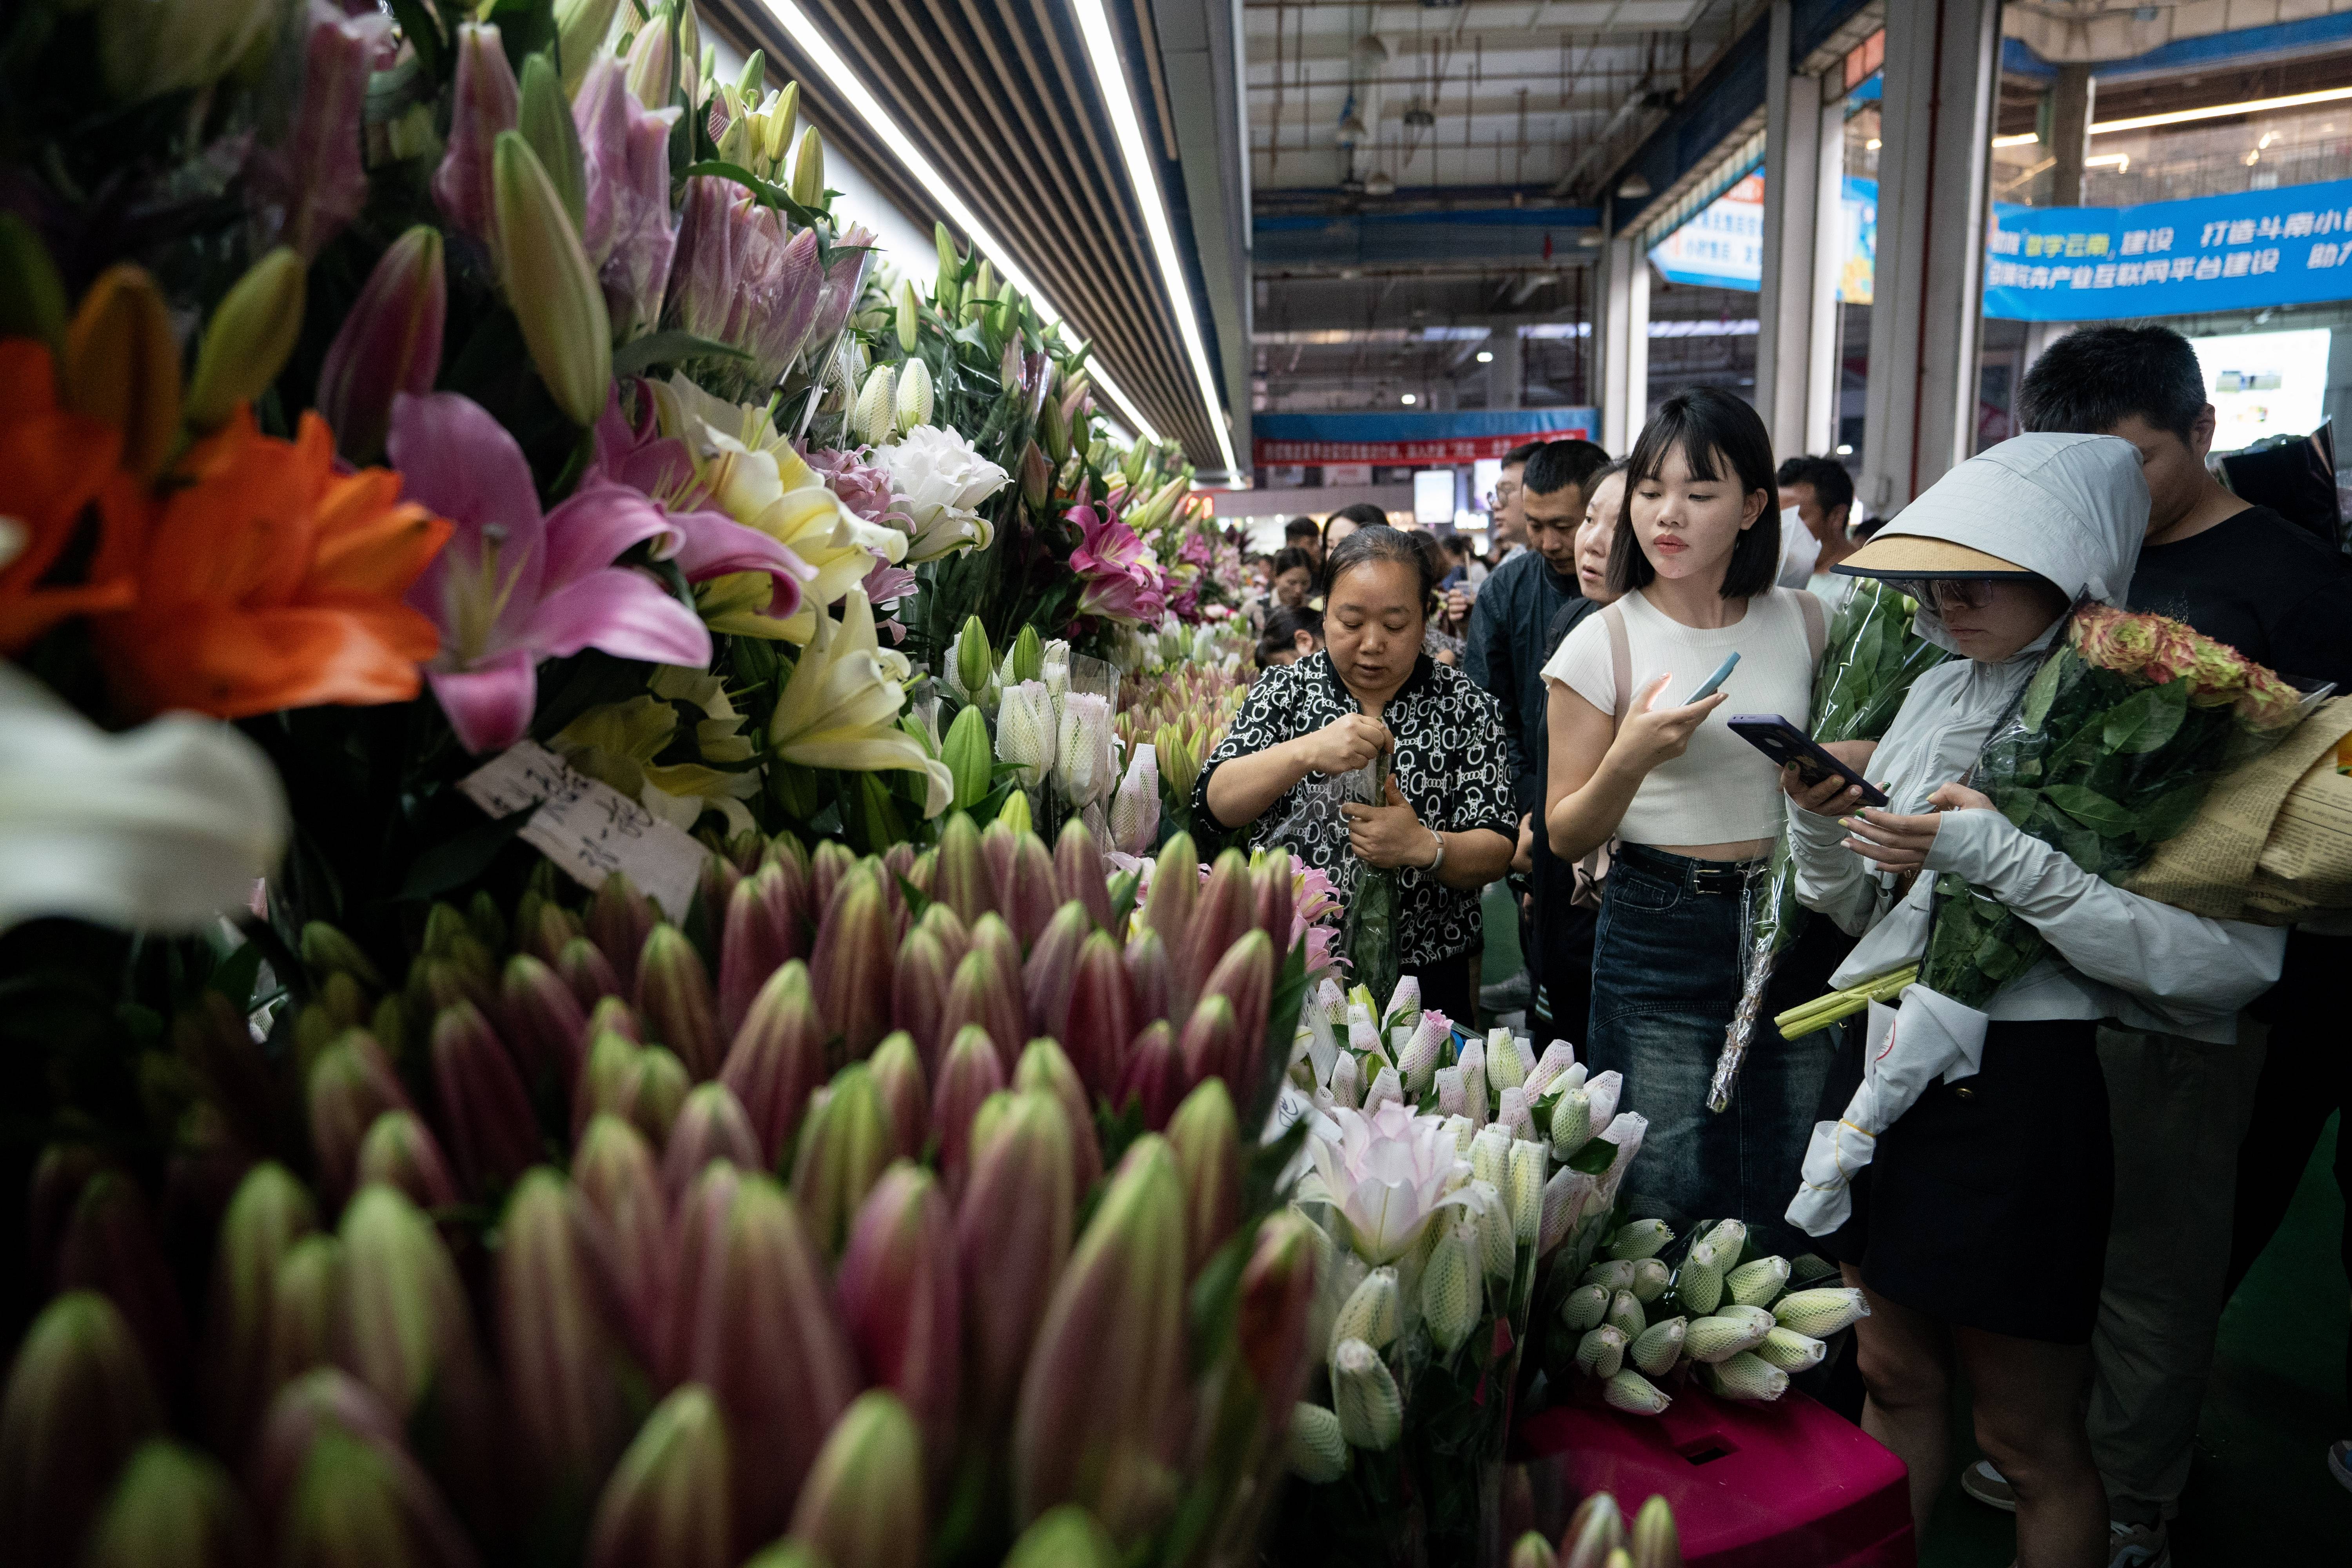 10月5日,市民游客在昆明斗南花卉市场内选购花卉